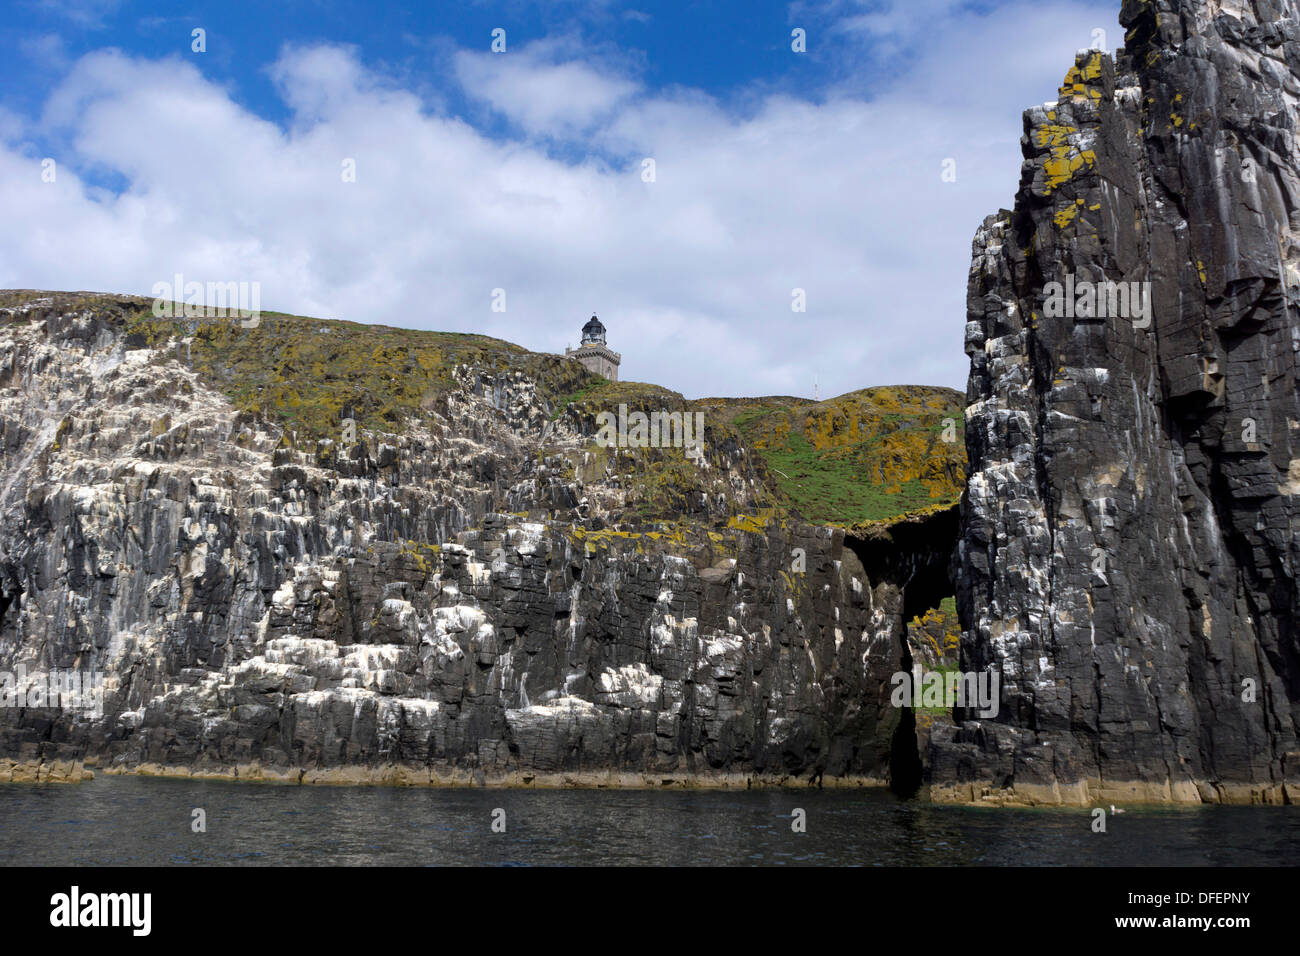 Les falaises de l'île de mai dans le Firth of Forth, Ecosse, blanchis par années de déjections d'oiseaux marins Banque D'Images